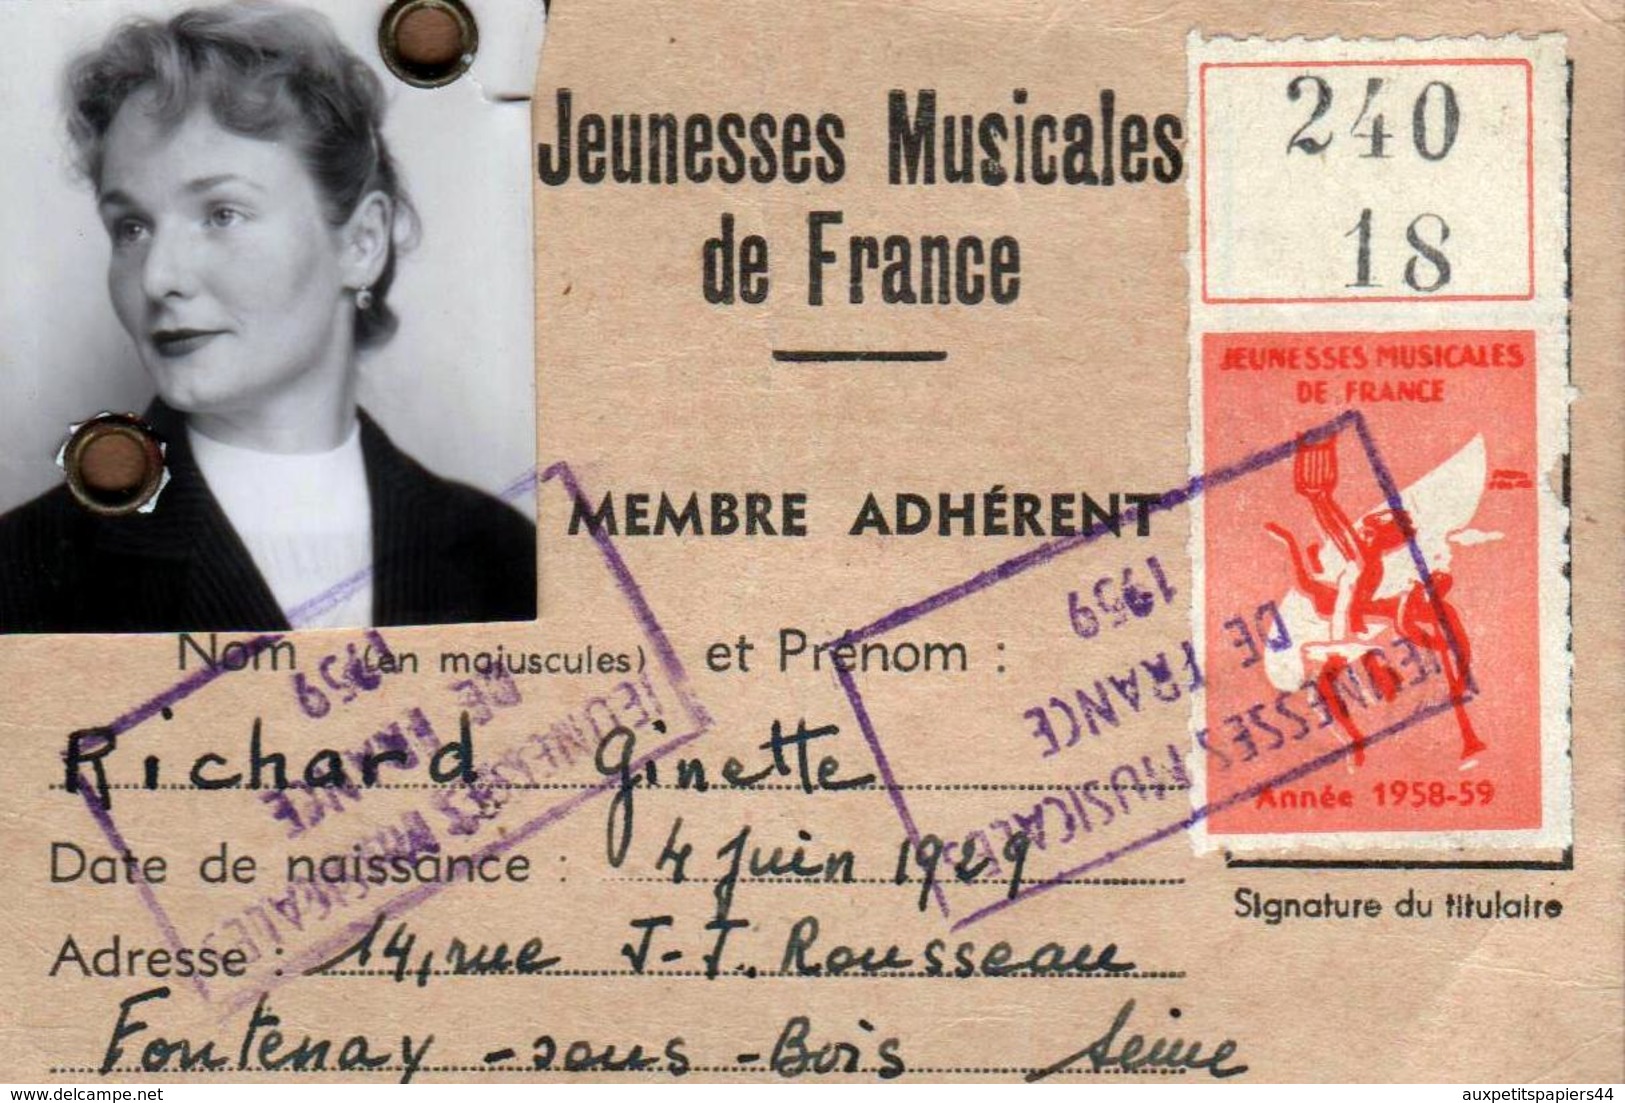 Carte Des Jeunesses Musicales De France - Membre Adhérent Richard Ginette, Fontenay Sous Bois, Vignette 1958/59 - Documents Historiques